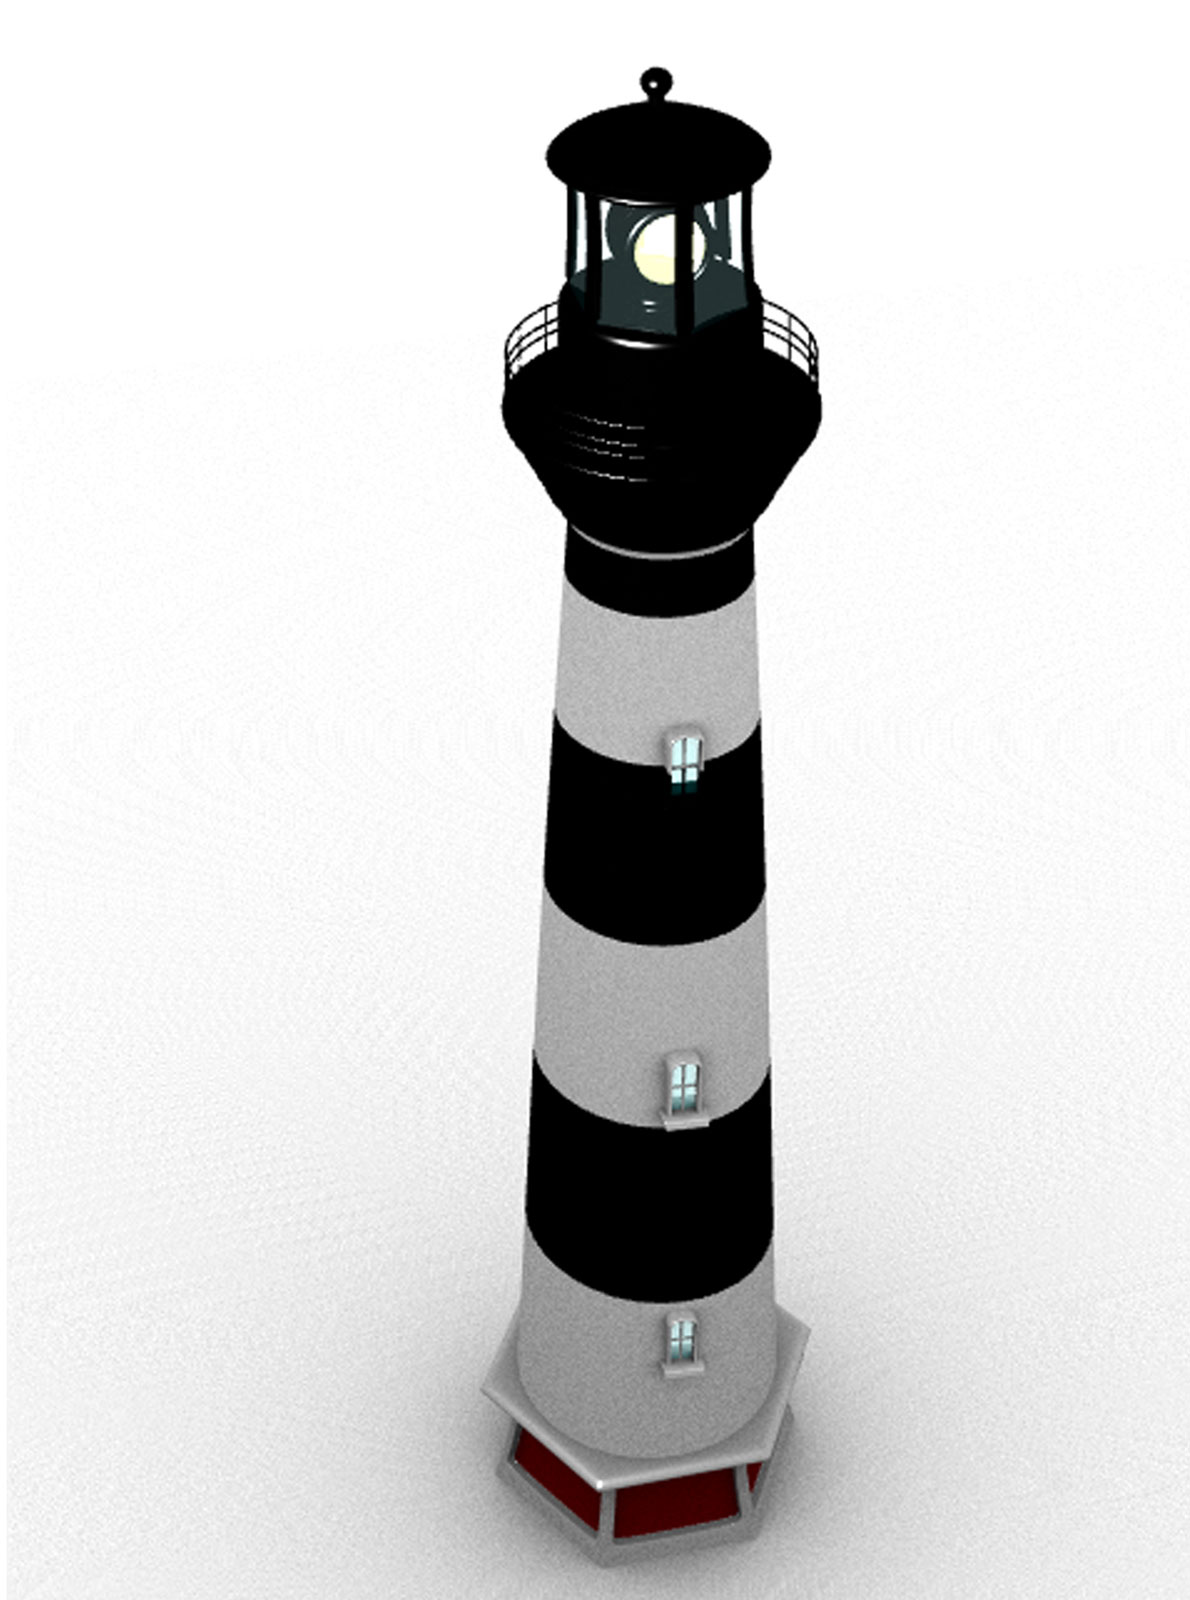 3D rendering of Beacon